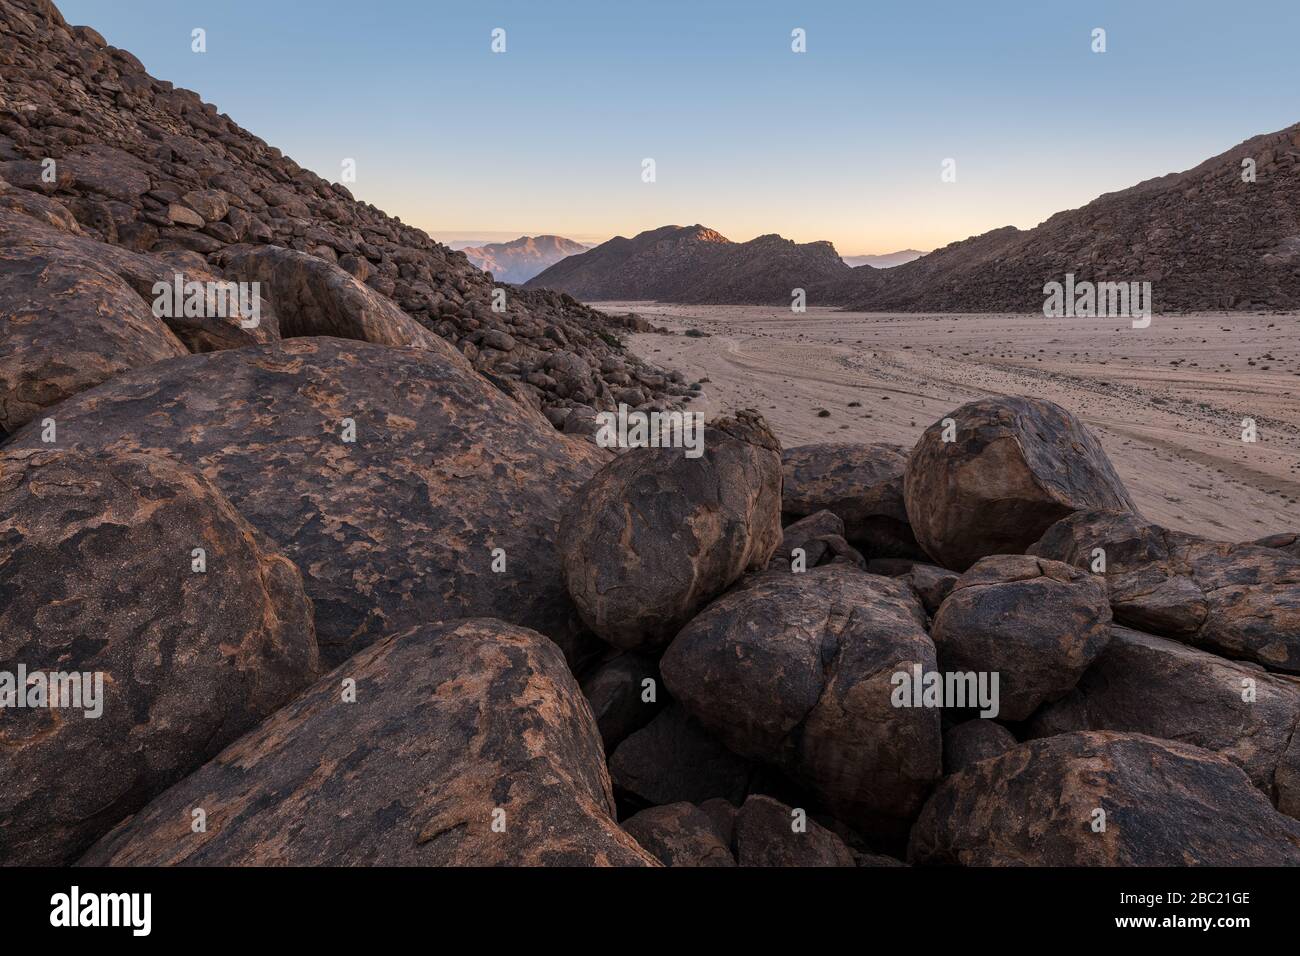 Un hermoso paisaje árido de montaña al amanecer, con una fascinante geología y formaciones rocosas en primer plano y una cordillera en el fondo, Foto de stock